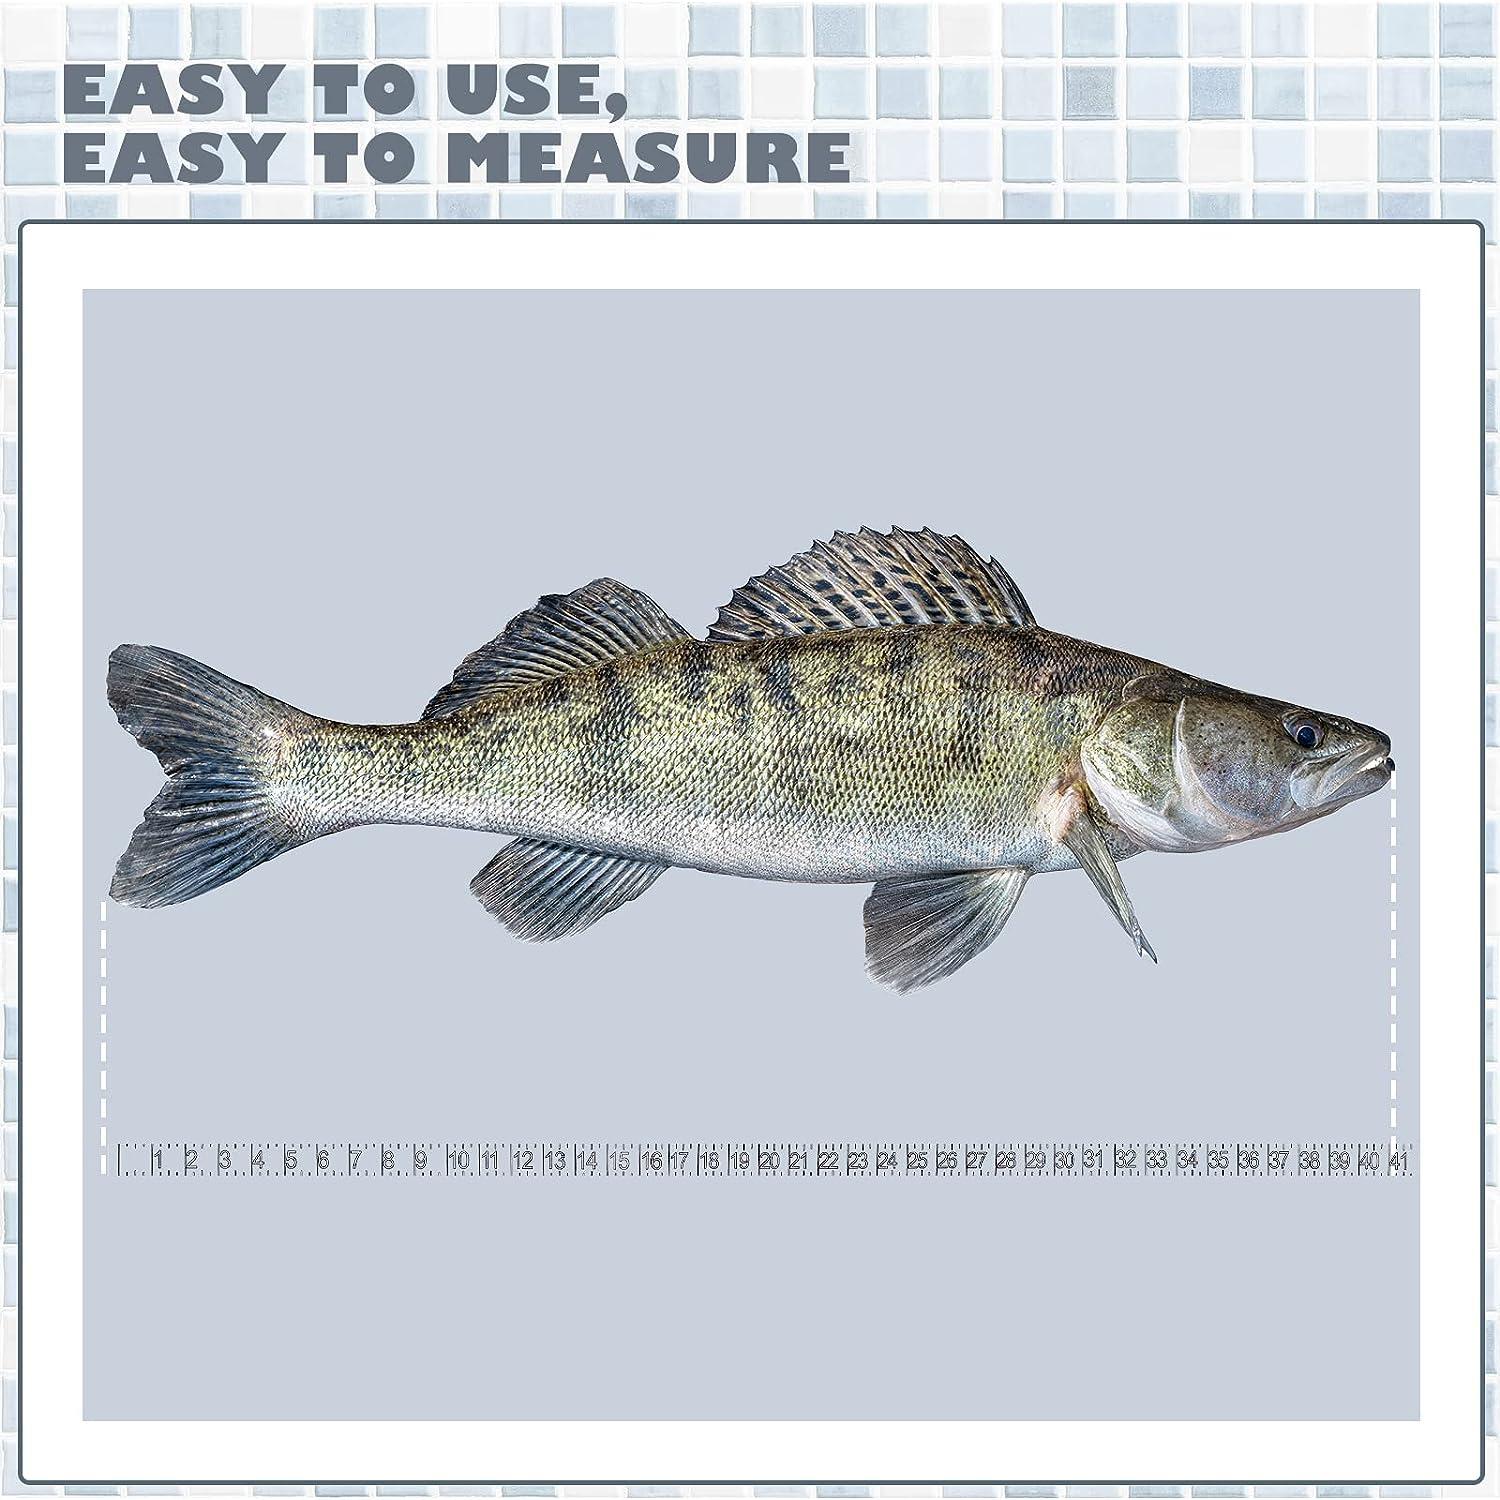 SAMSFX Fishing Self Adhesive Measuring Fish Ruler Tape Sticker